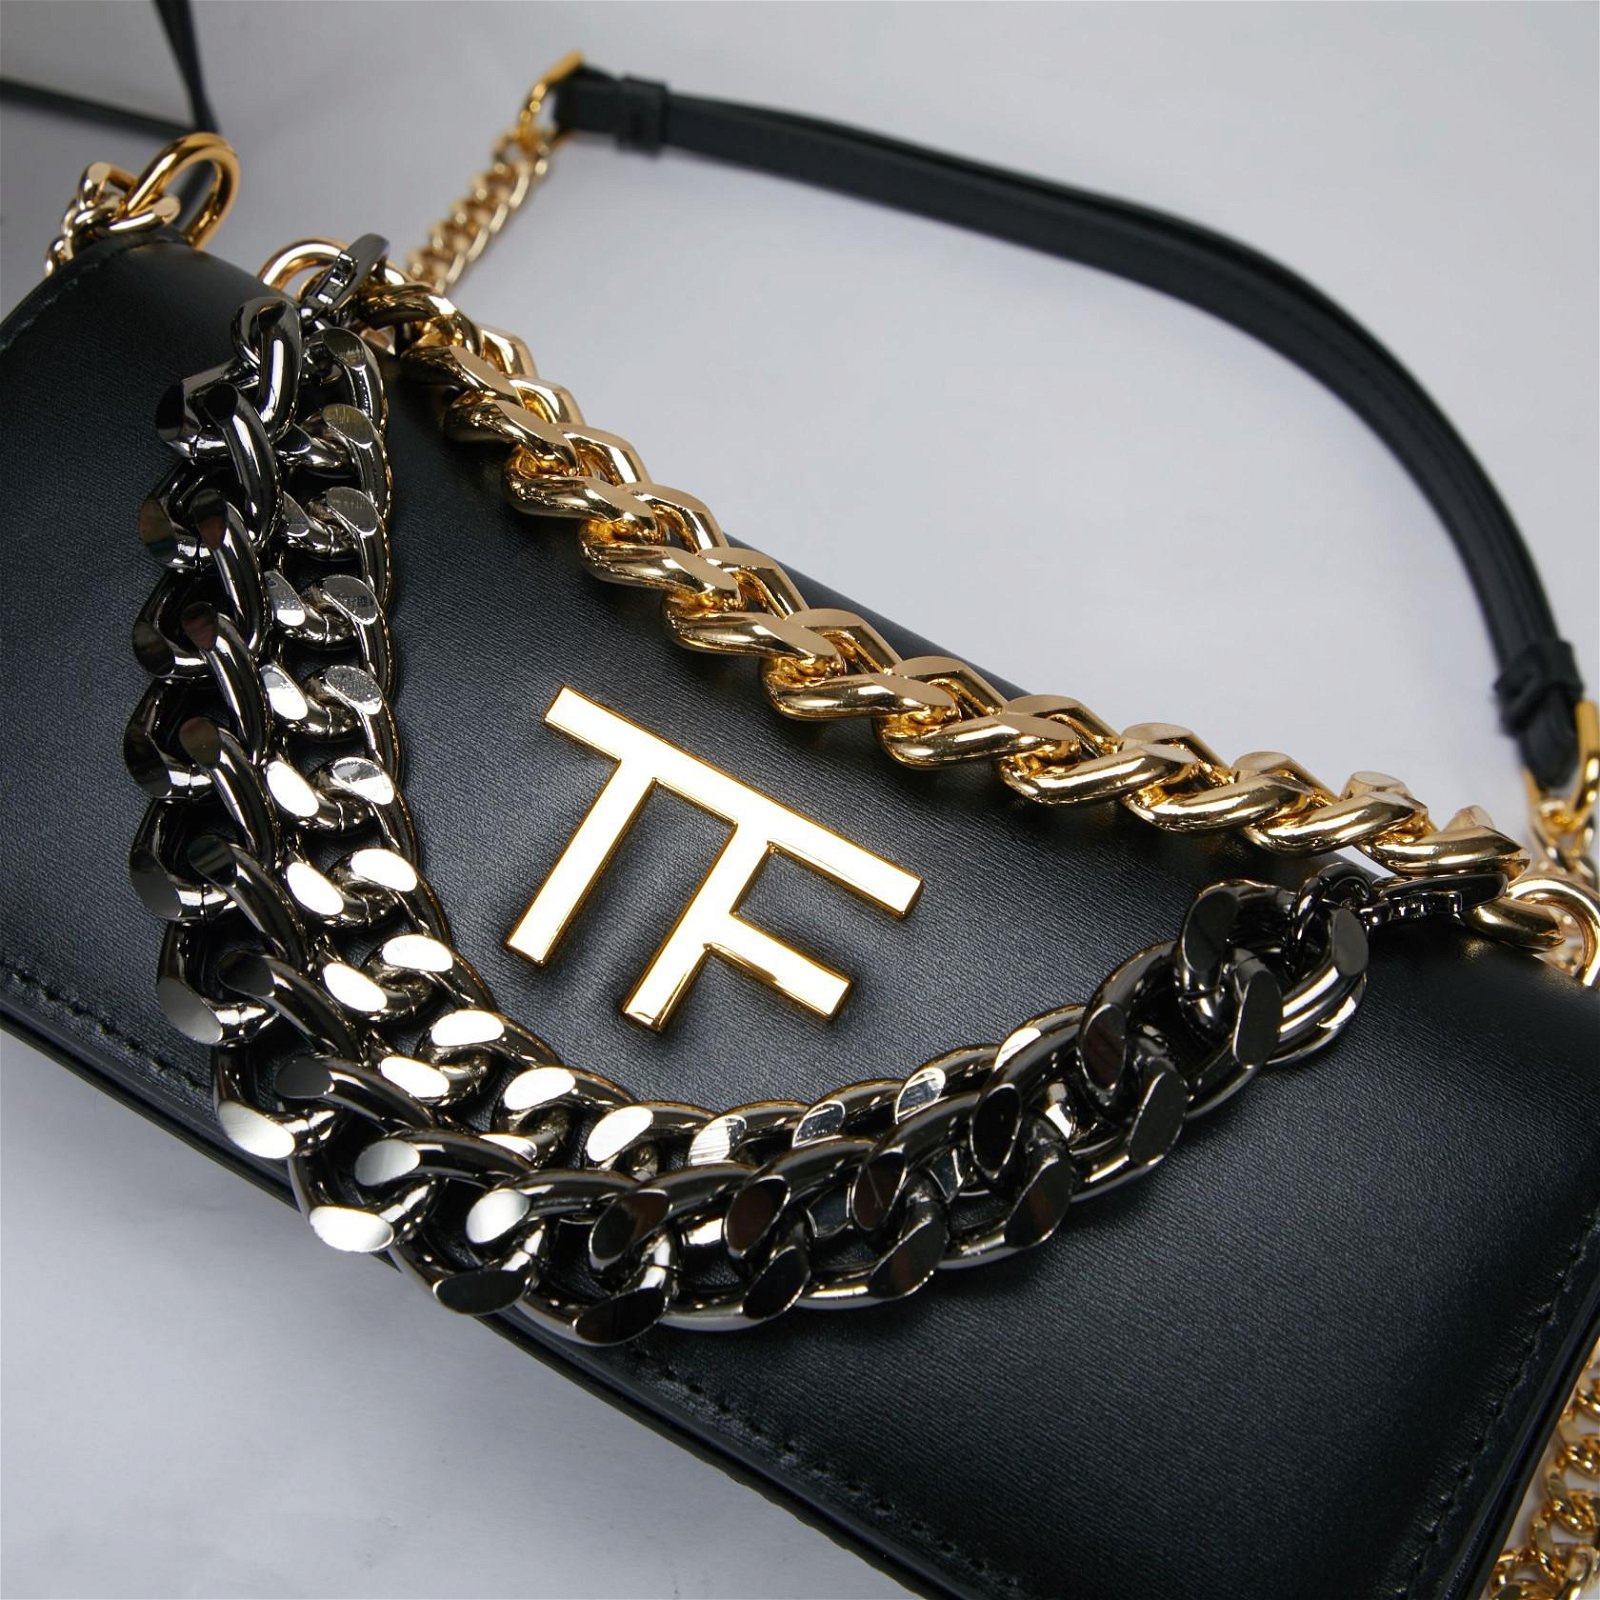 Tom Ford Palmellato triple chain cross body bag black Fashion bags 2